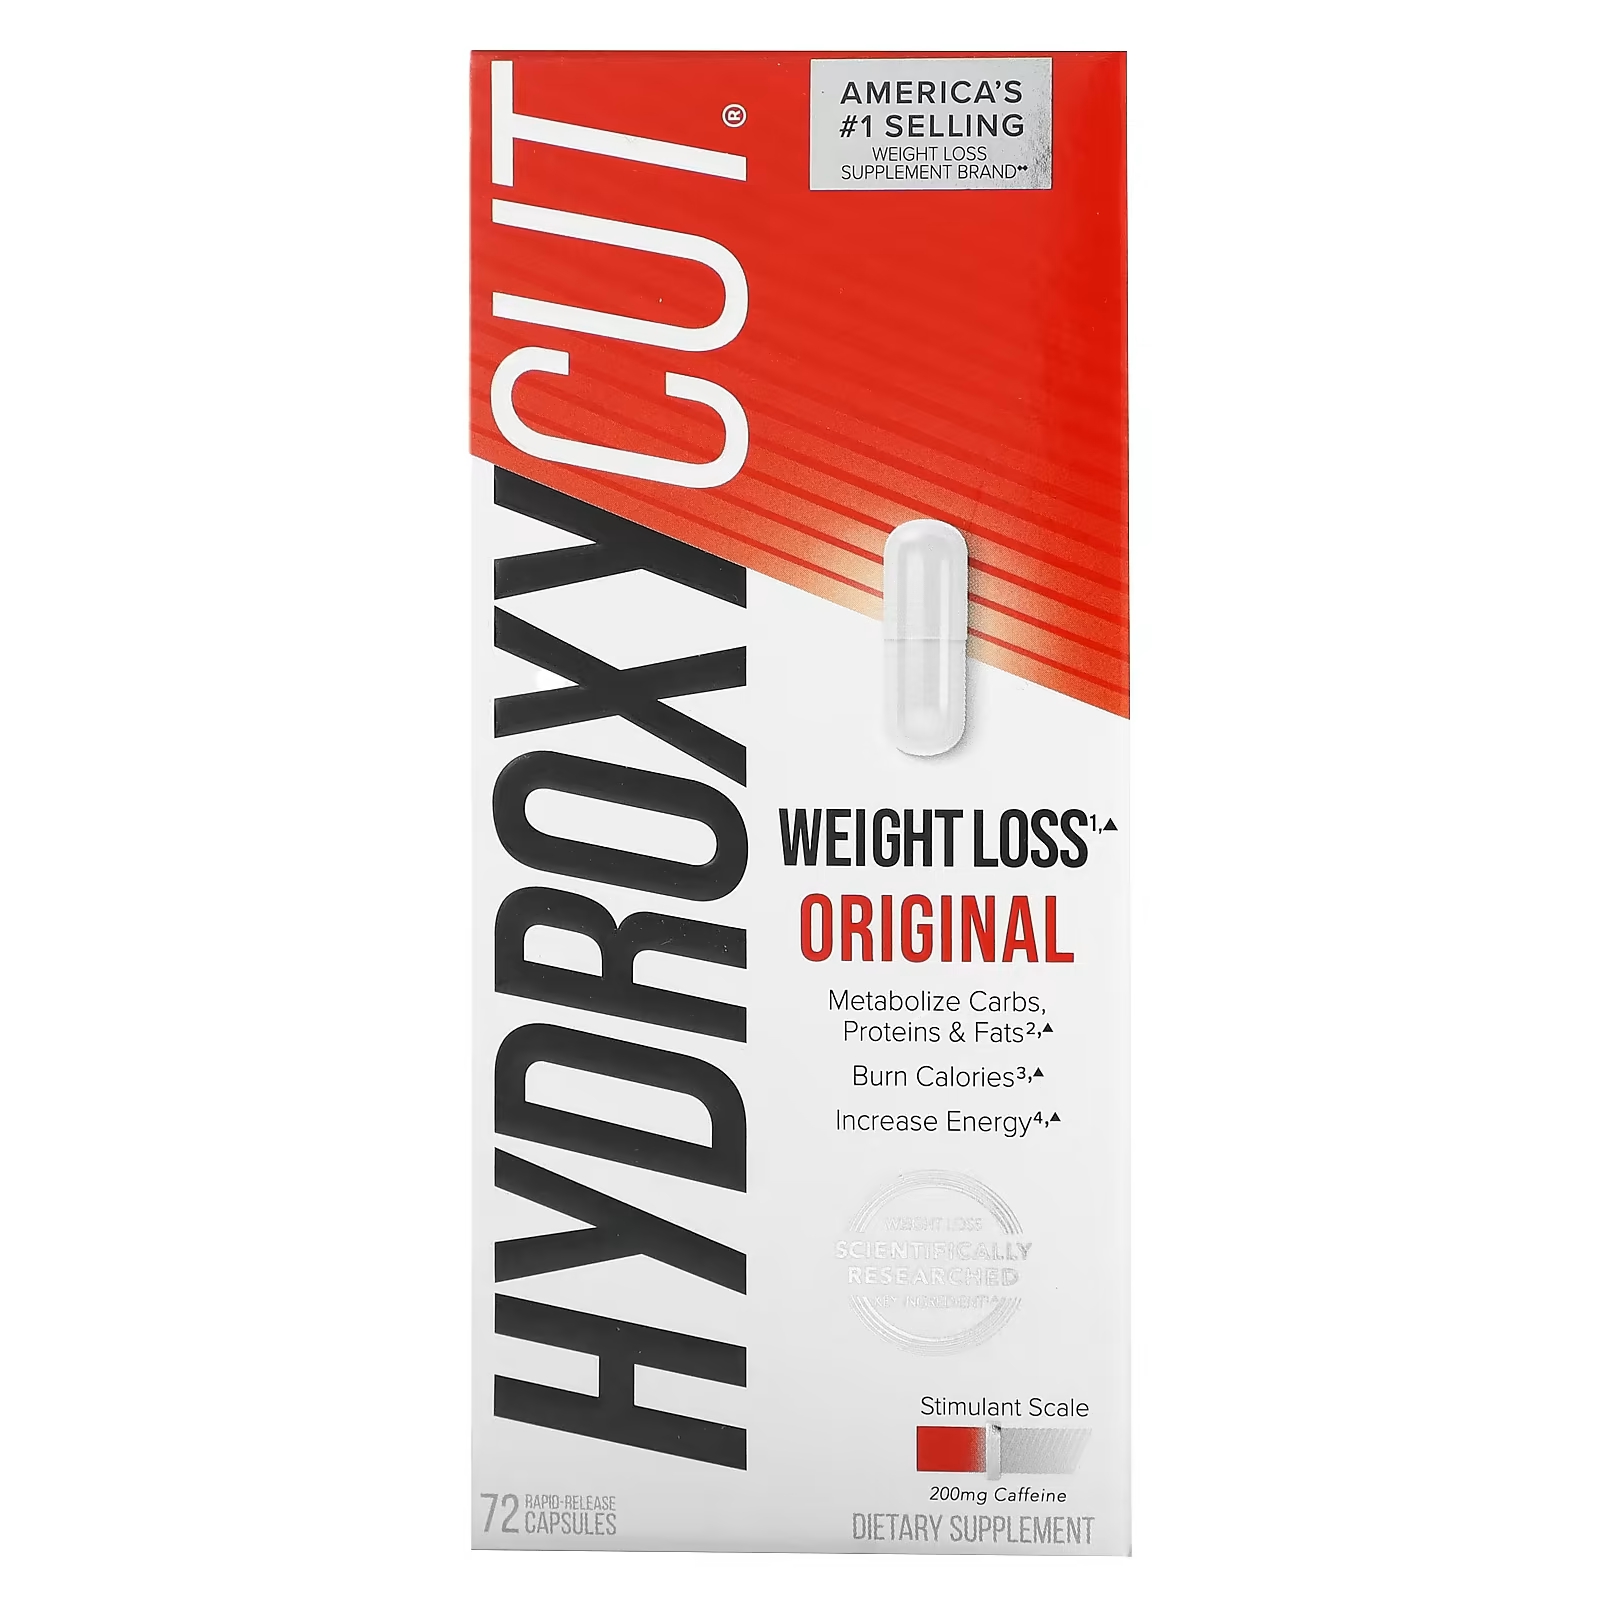 Пищевая добавка Hydroxycut потеря веса, 72 капсулы цена и фото